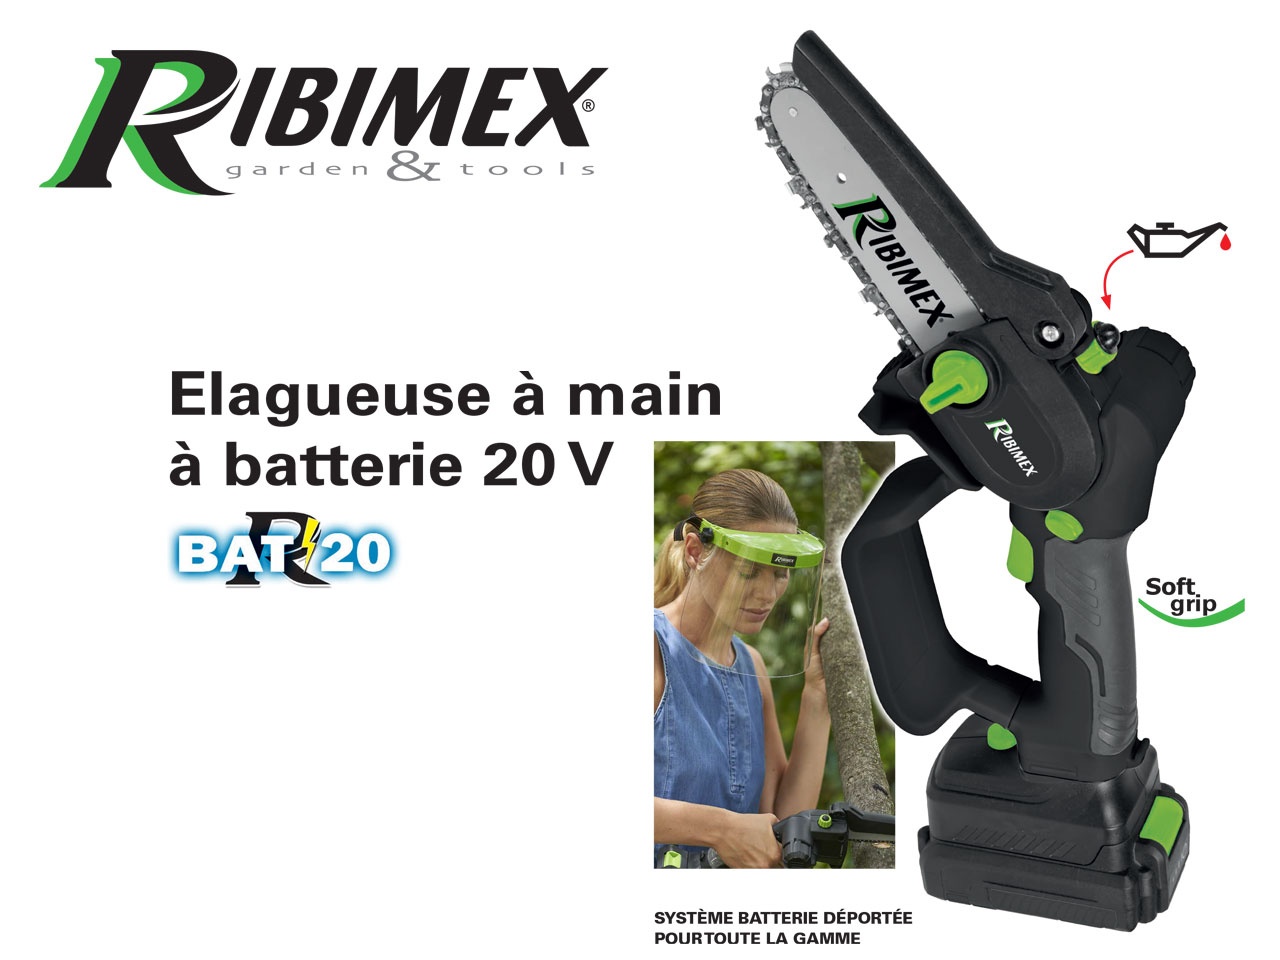 RIBIMEX Garden & Tools : Zoom sur l’Elagueuse à main à batterie 20 V